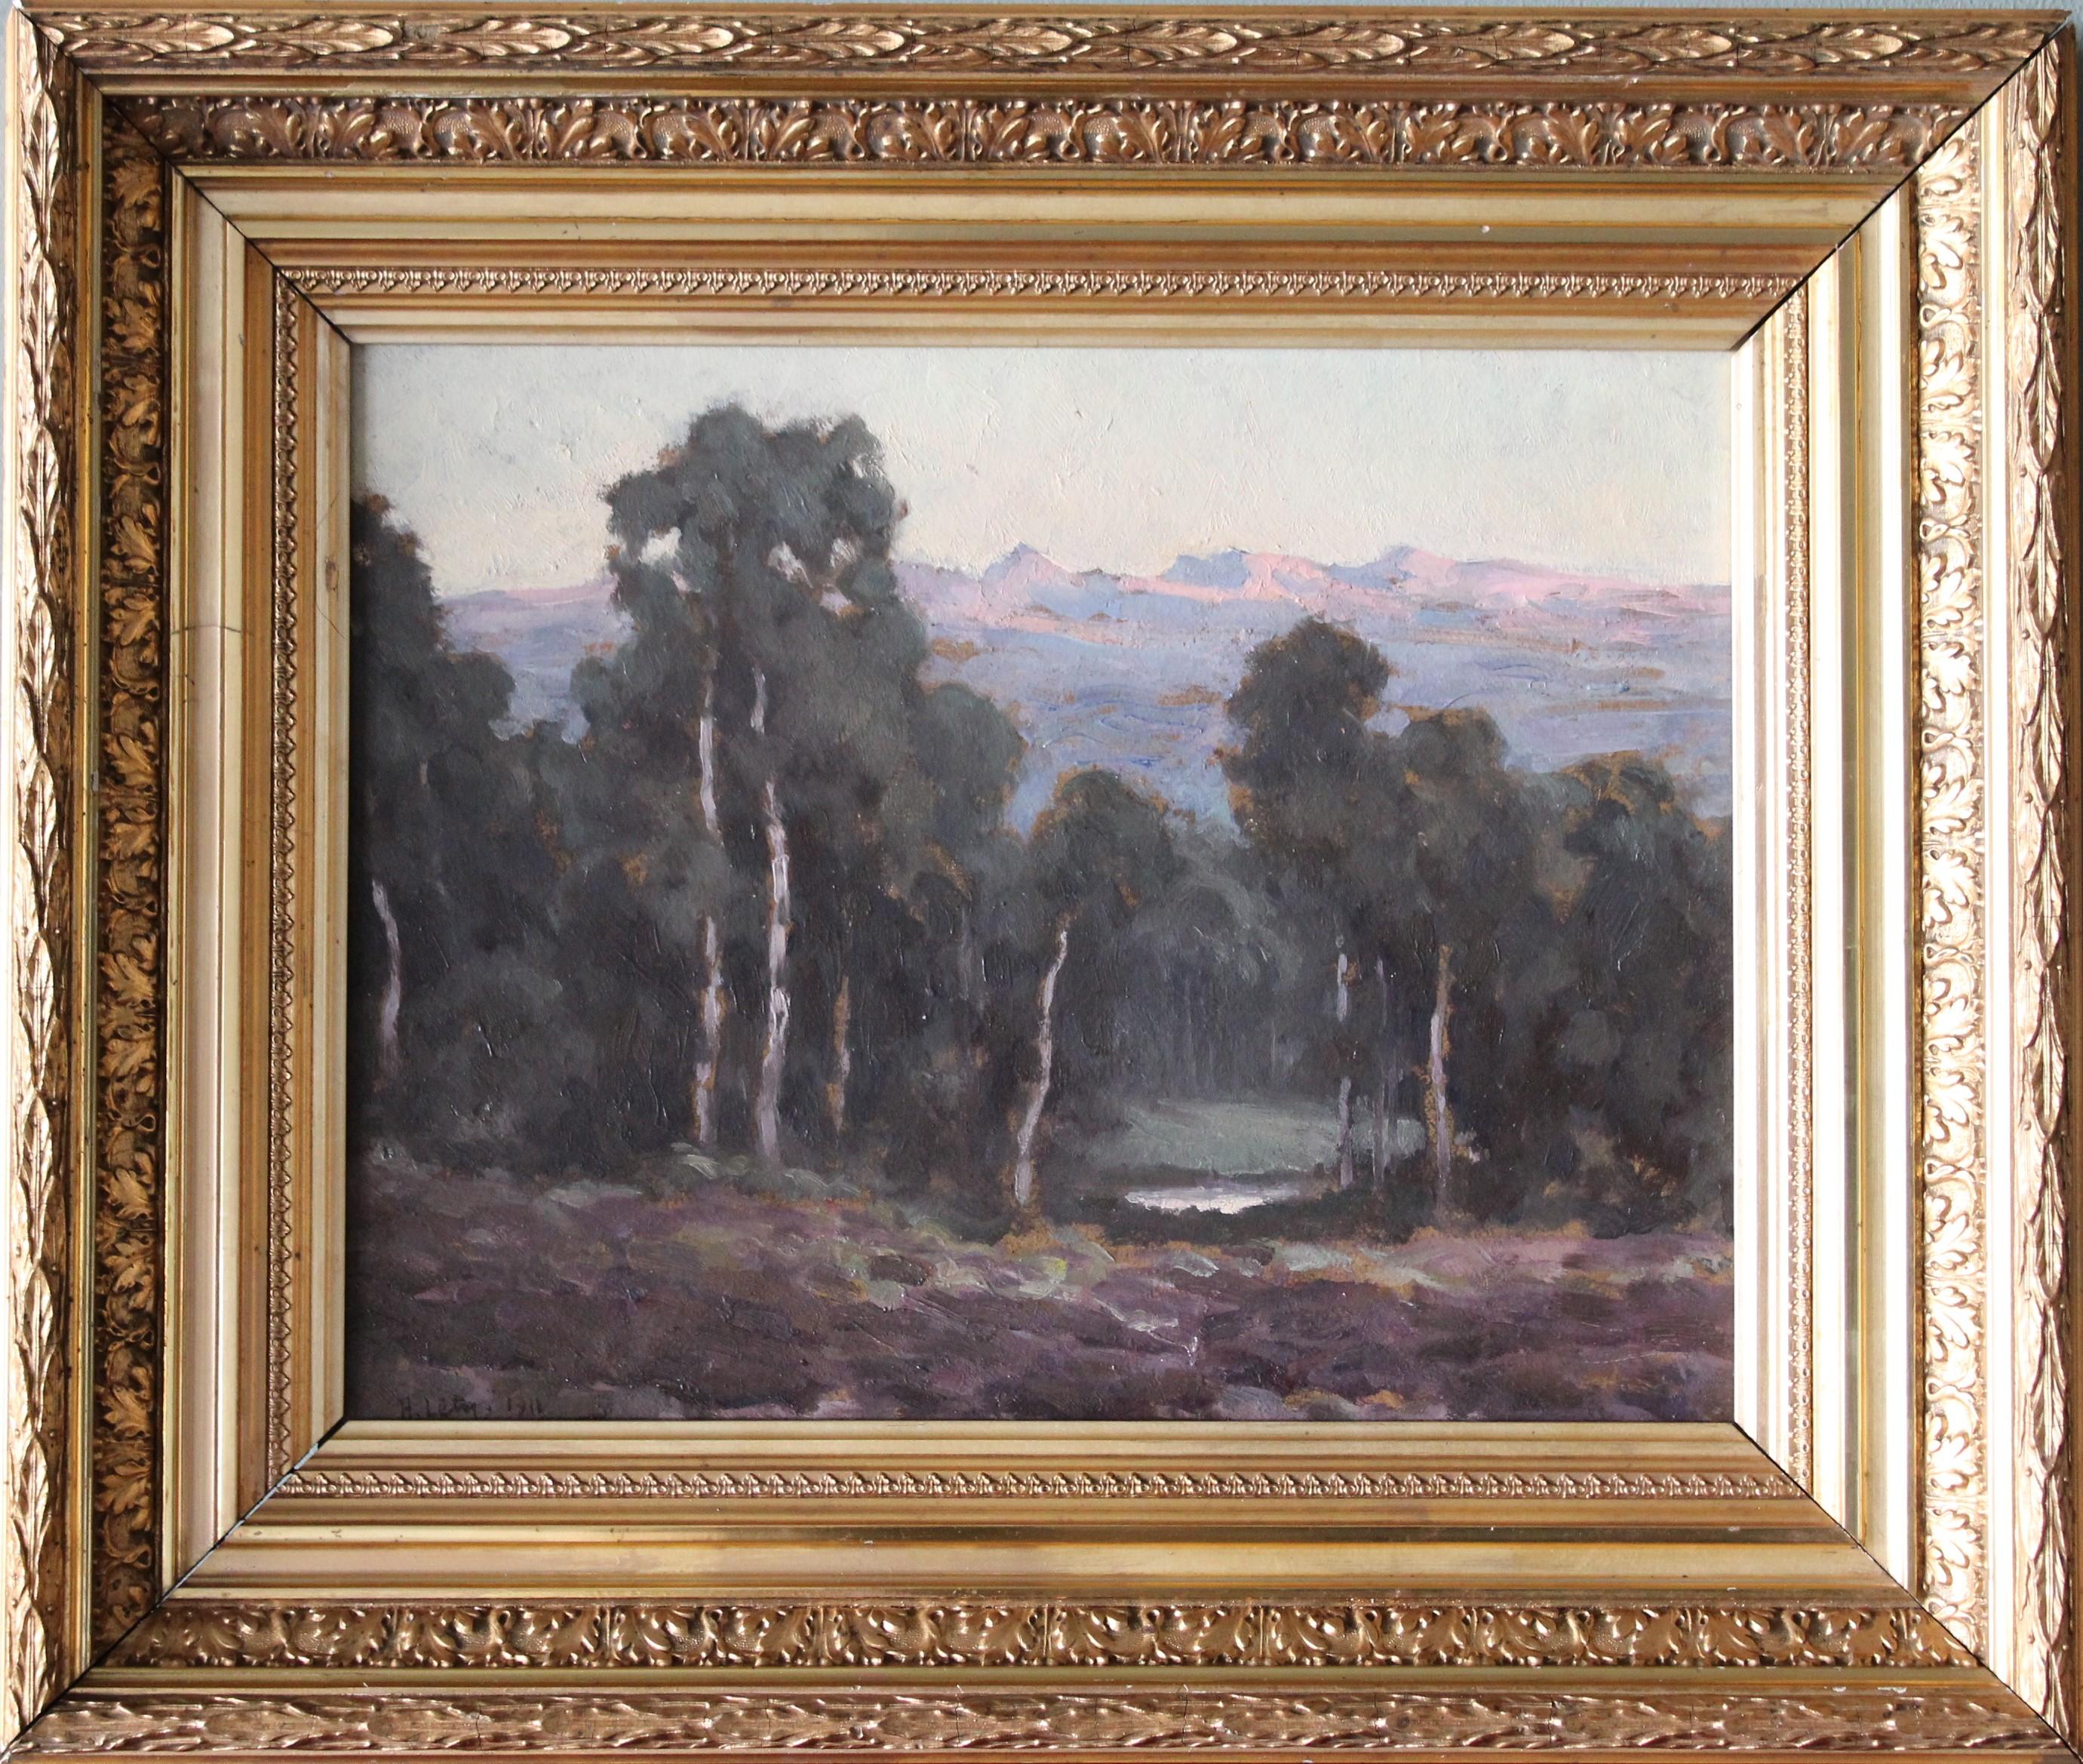 Ancien paysage de bois impressionniste français par l'artiste français Hippolyte Lety (1878-1959), signé et daté dans le coin inférieur gauche.  Peinture à l'huile atmosphérique sur carton épais.  L'œil s'enfonce dans la forêt, où l'on aperçoit un